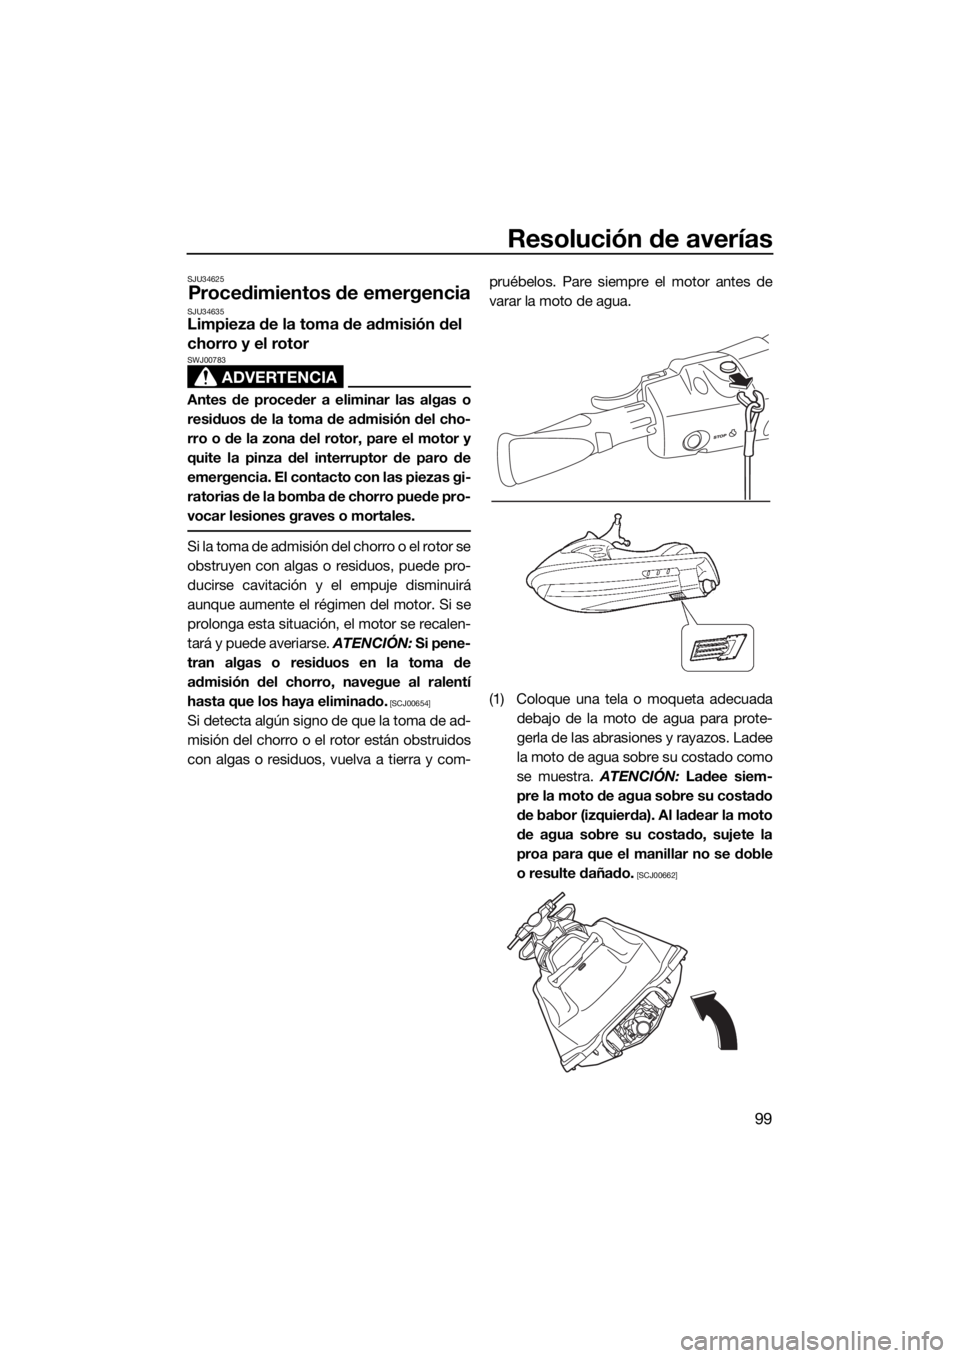 YAMAHA VX CRUISER 2015  Manuale de Empleo (in Spanish) Resolución de averías
99
SJU34625
Procedimientos de emergenciaSJU34635Limpieza de la toma de admisión del 
chorro y el rotor
ADVERTENCIA
SWJ00783
Antes de proceder a eliminar las algas o
residuos d